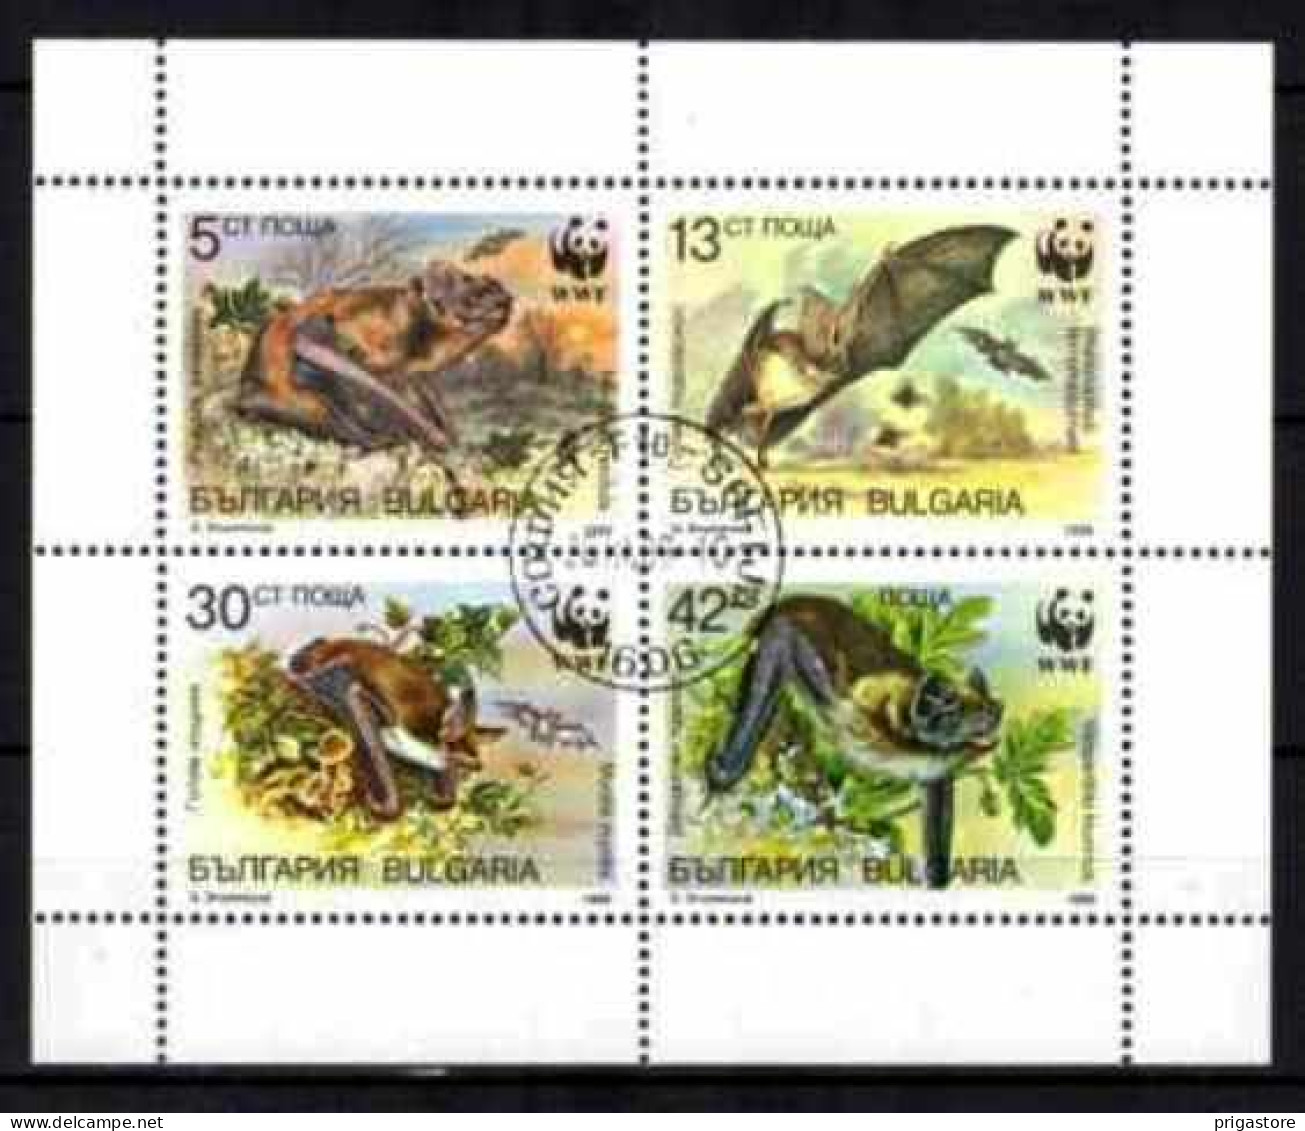 Animaux Chauve-Souris Bulgarie 1989 (55) Yvert N° 3231 à 3234 Oblitéré Used - Murciélagos